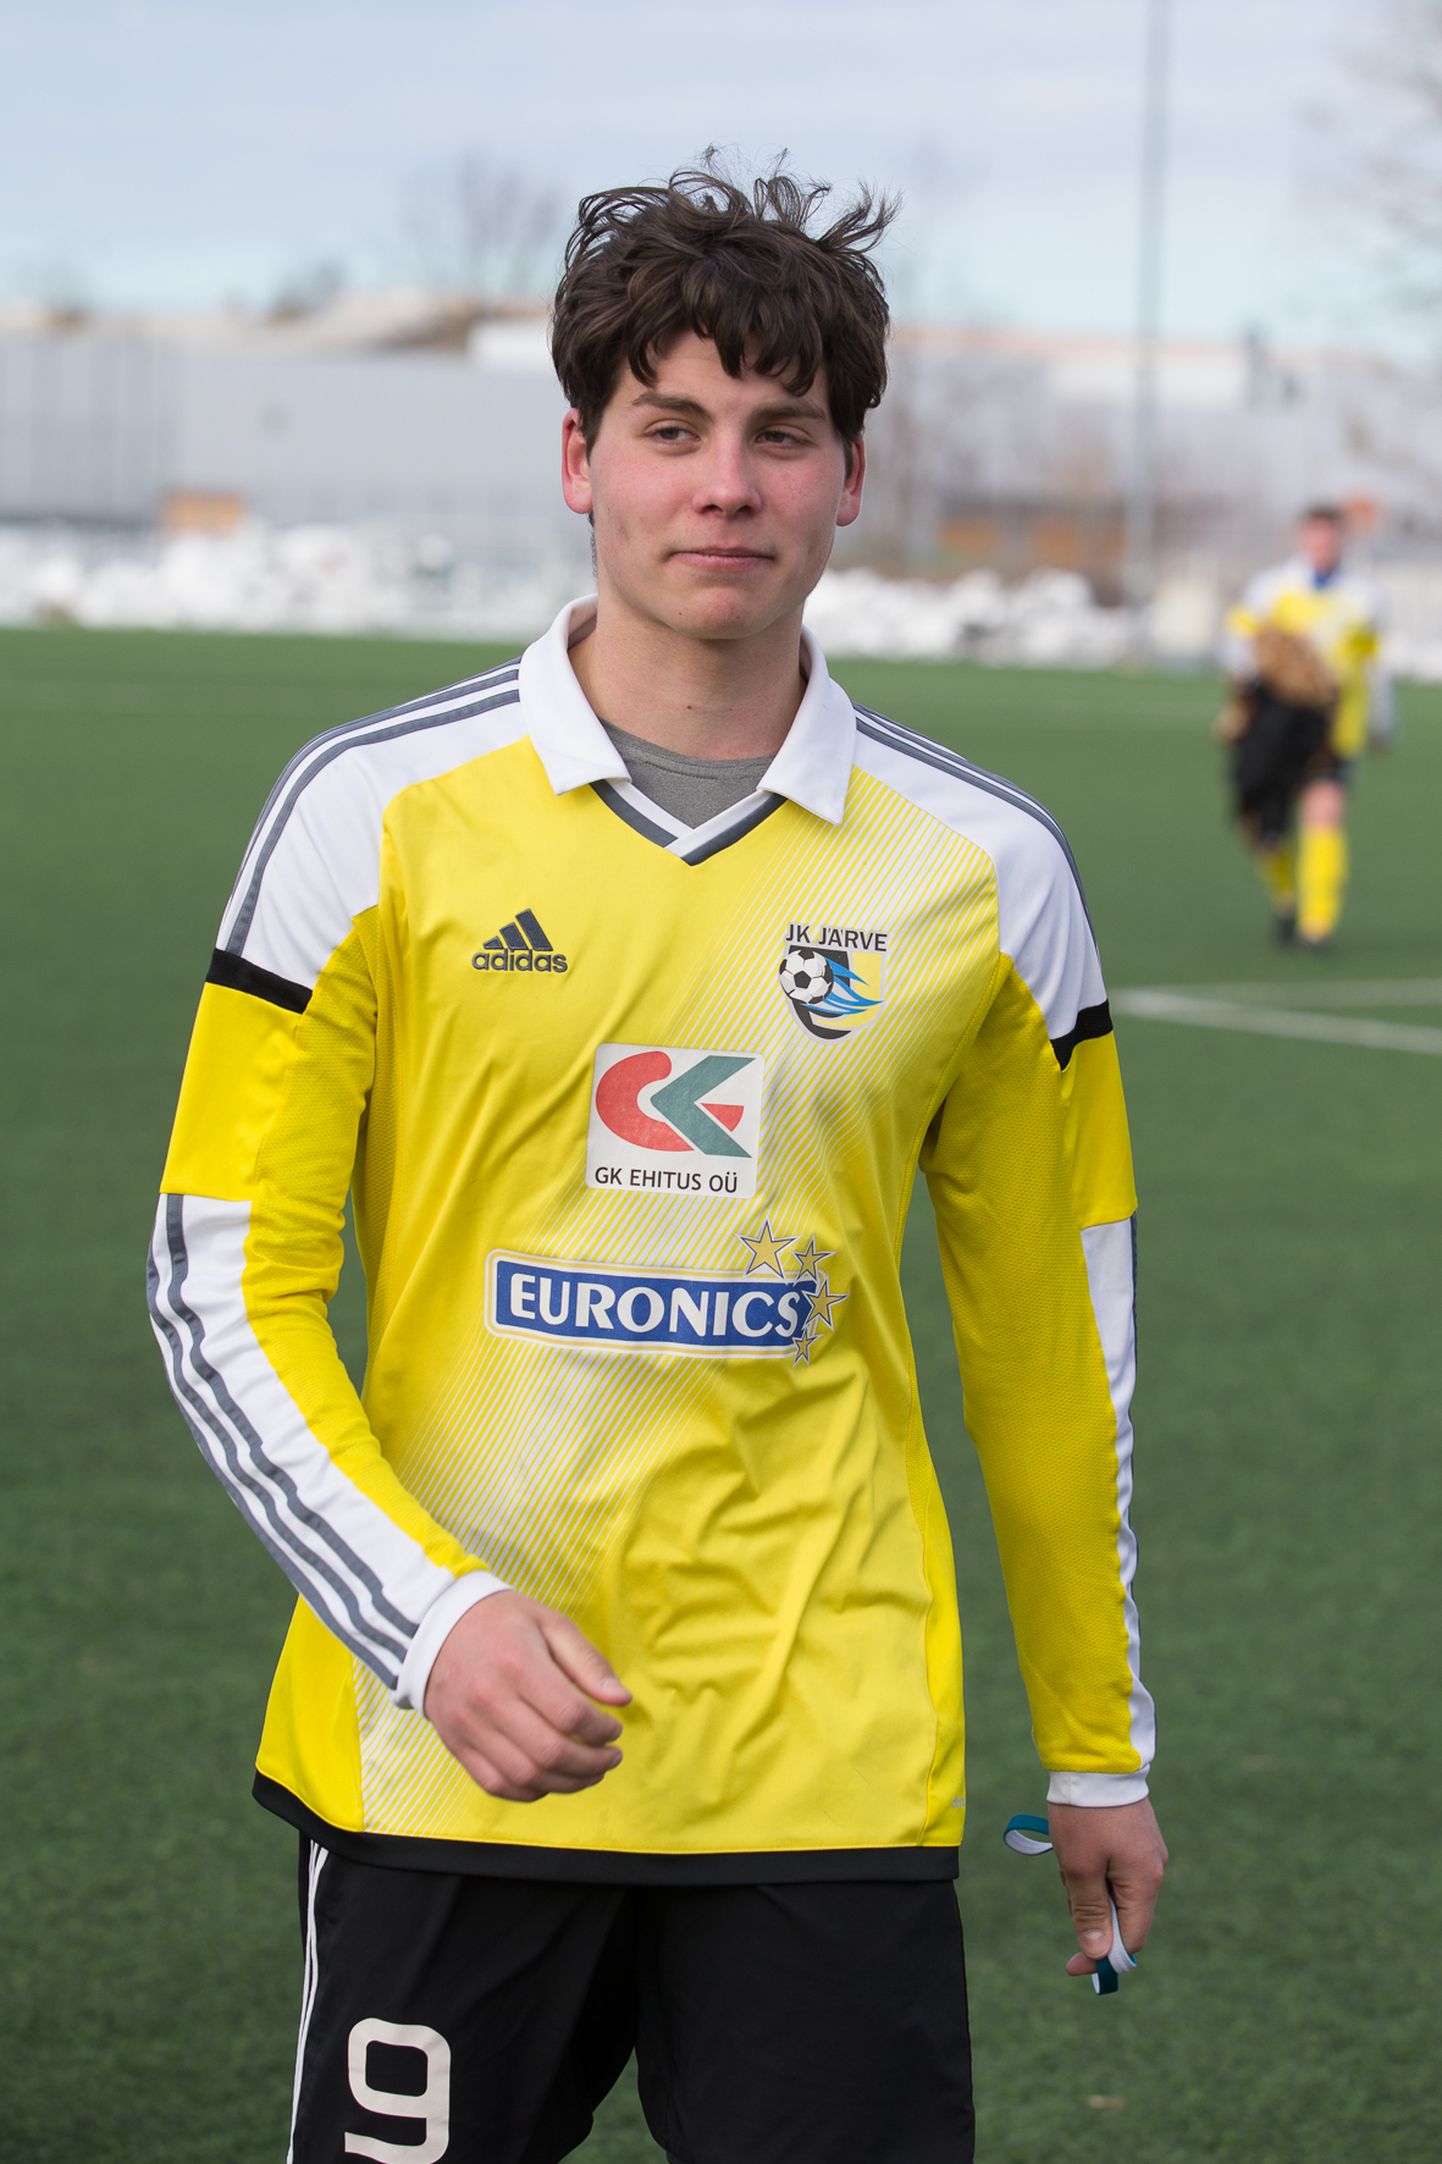 18-летний нападающий ФК "Ярве" Райво Саар в победном матче с командой U21 "Левадии" забил два гола. В нынешнем сезоне он поразил ворота уже пять раз.